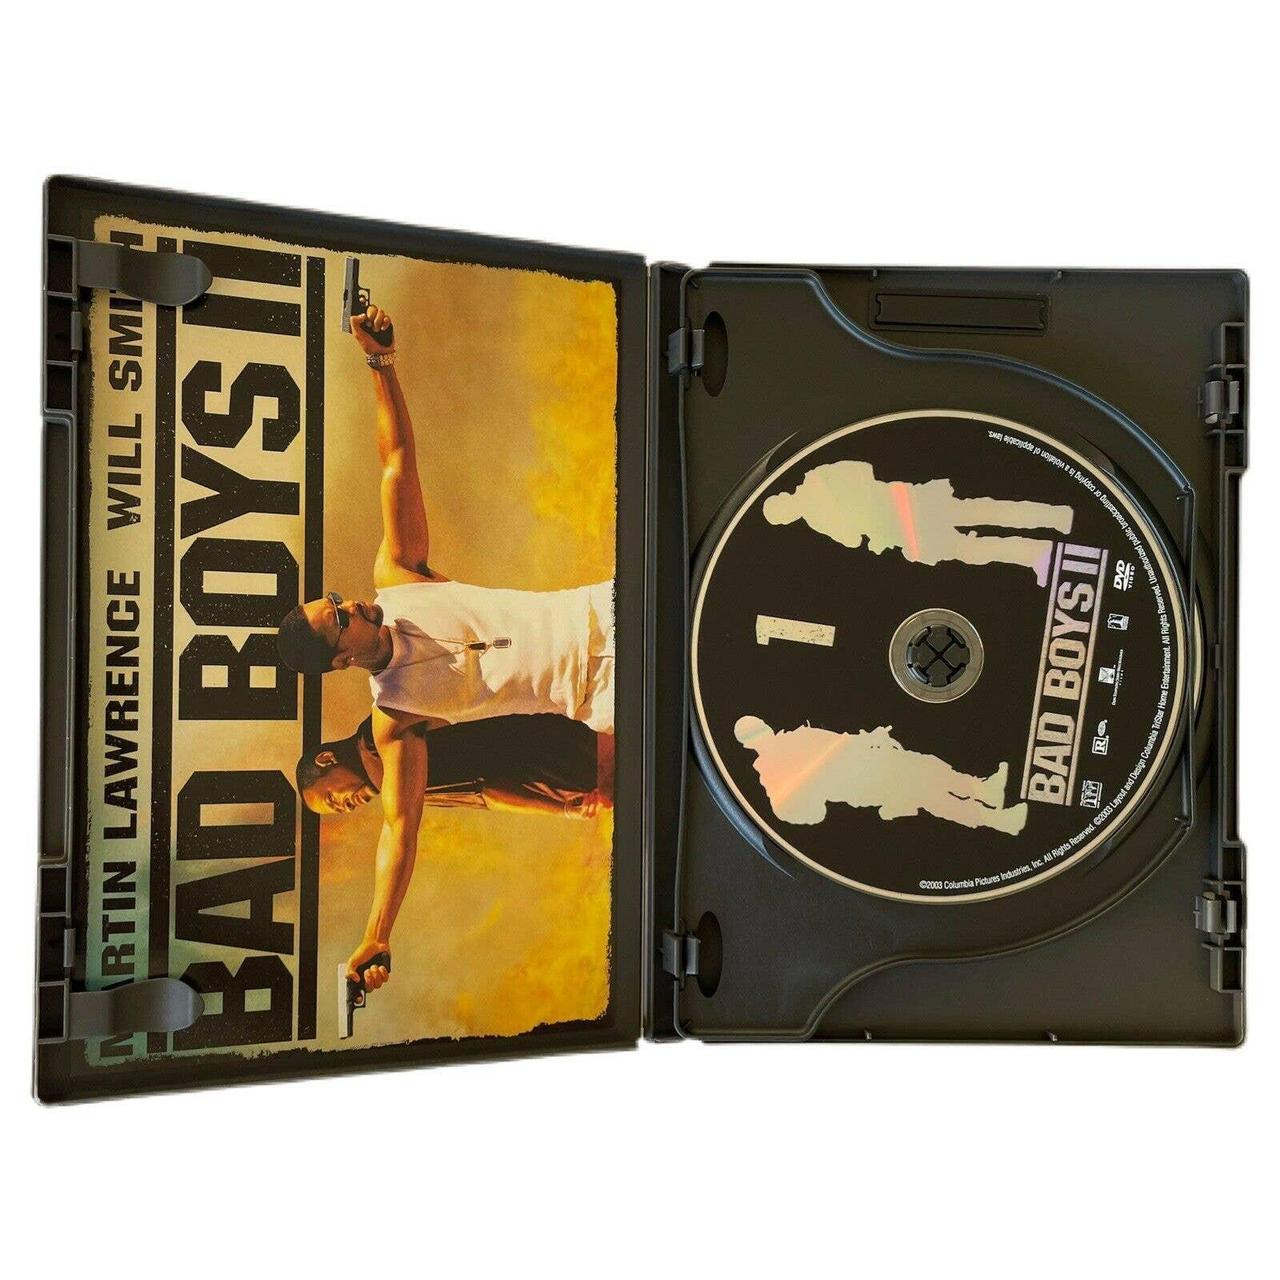 Product Image 2 - Bad Boys II (DVD, 2003,